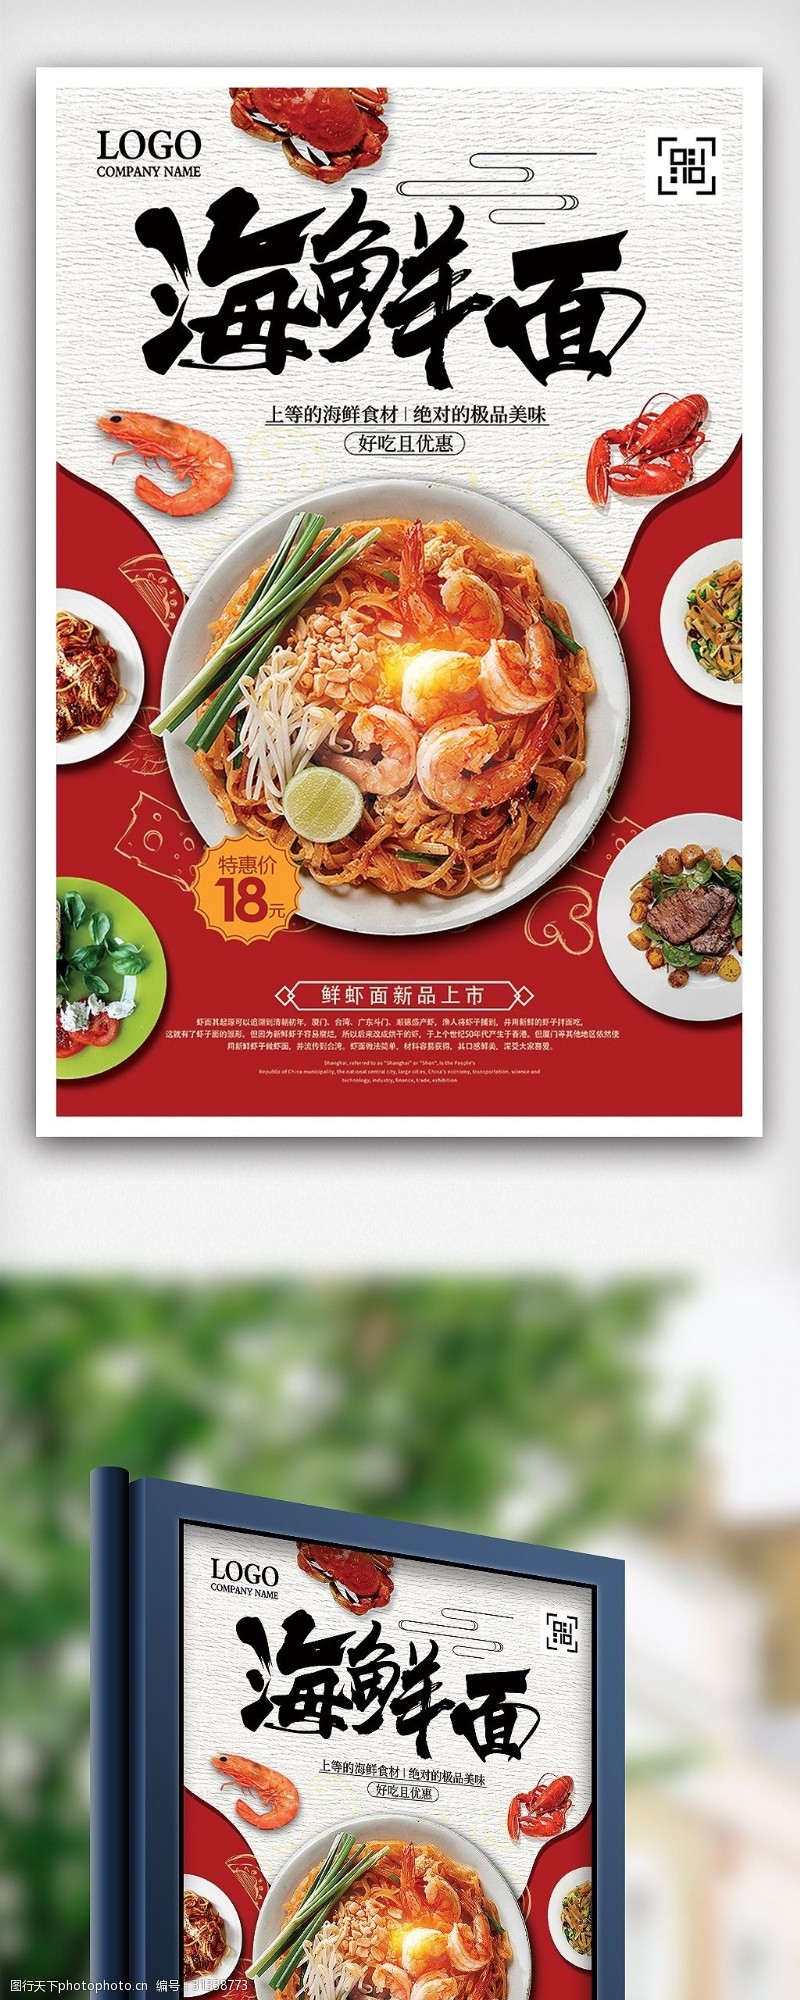 特价图片免费下载时尚海鲜面特价餐饮美食海报